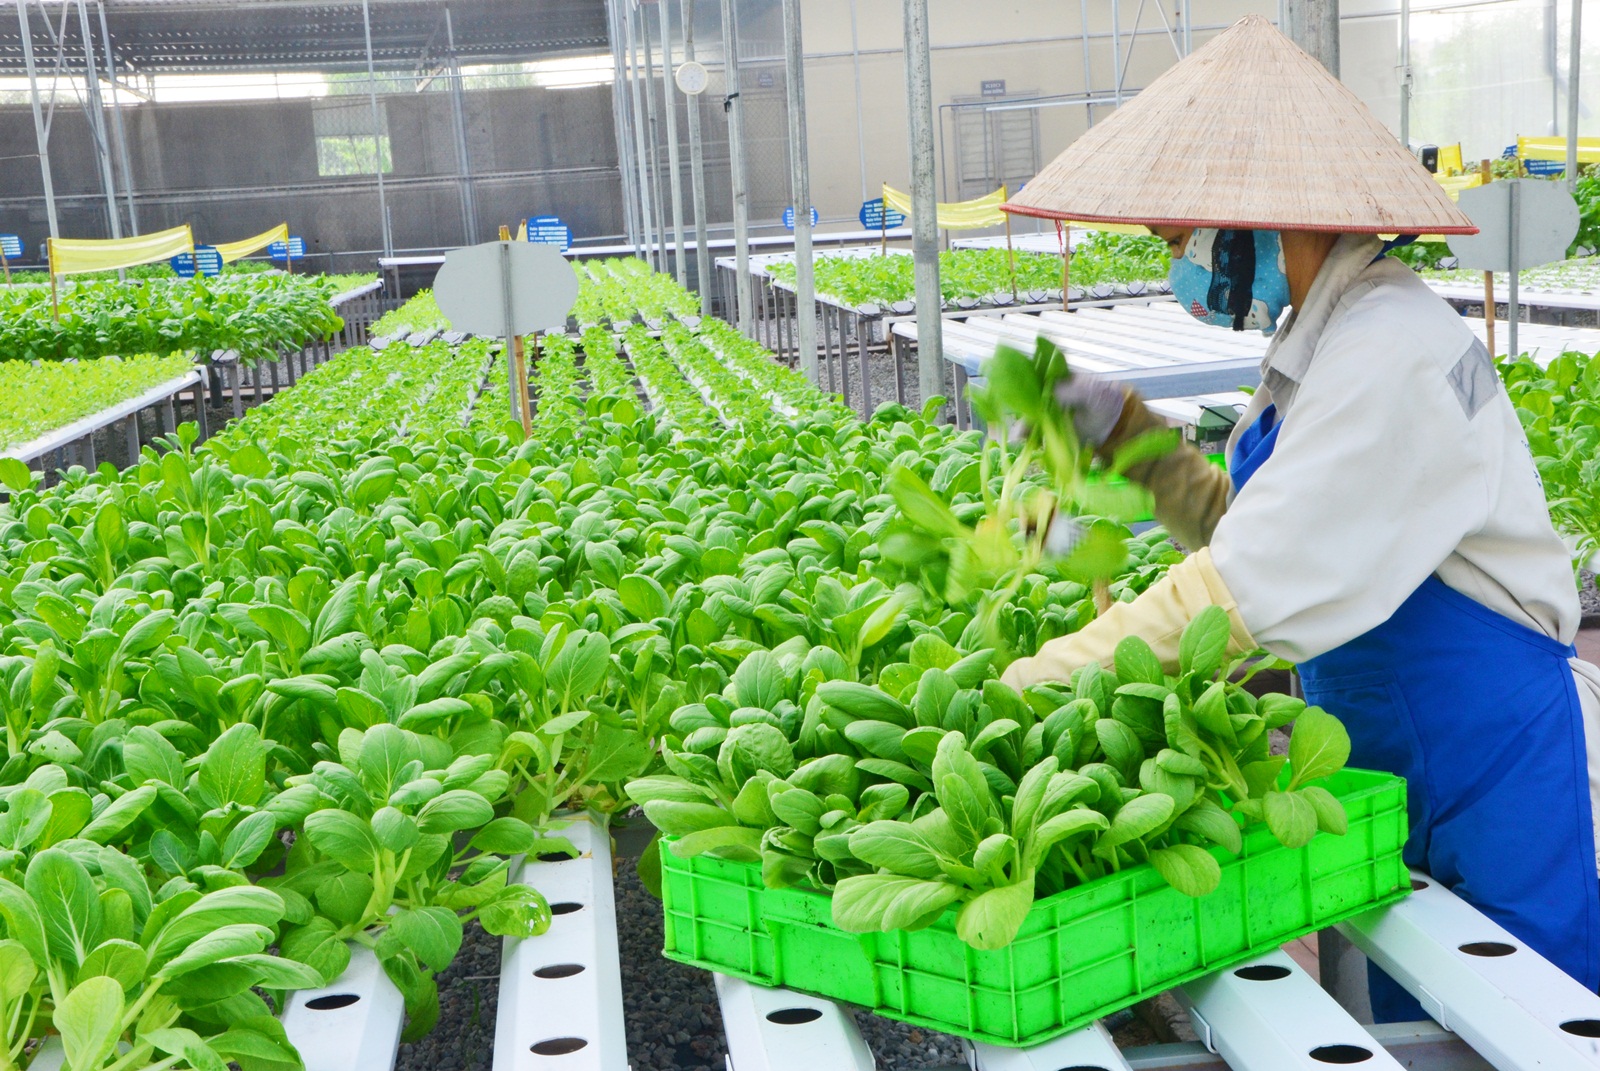 TP Hồ Chí Minh đẩy mạnh nông nghiệp đô thị hiện đại và bền vững